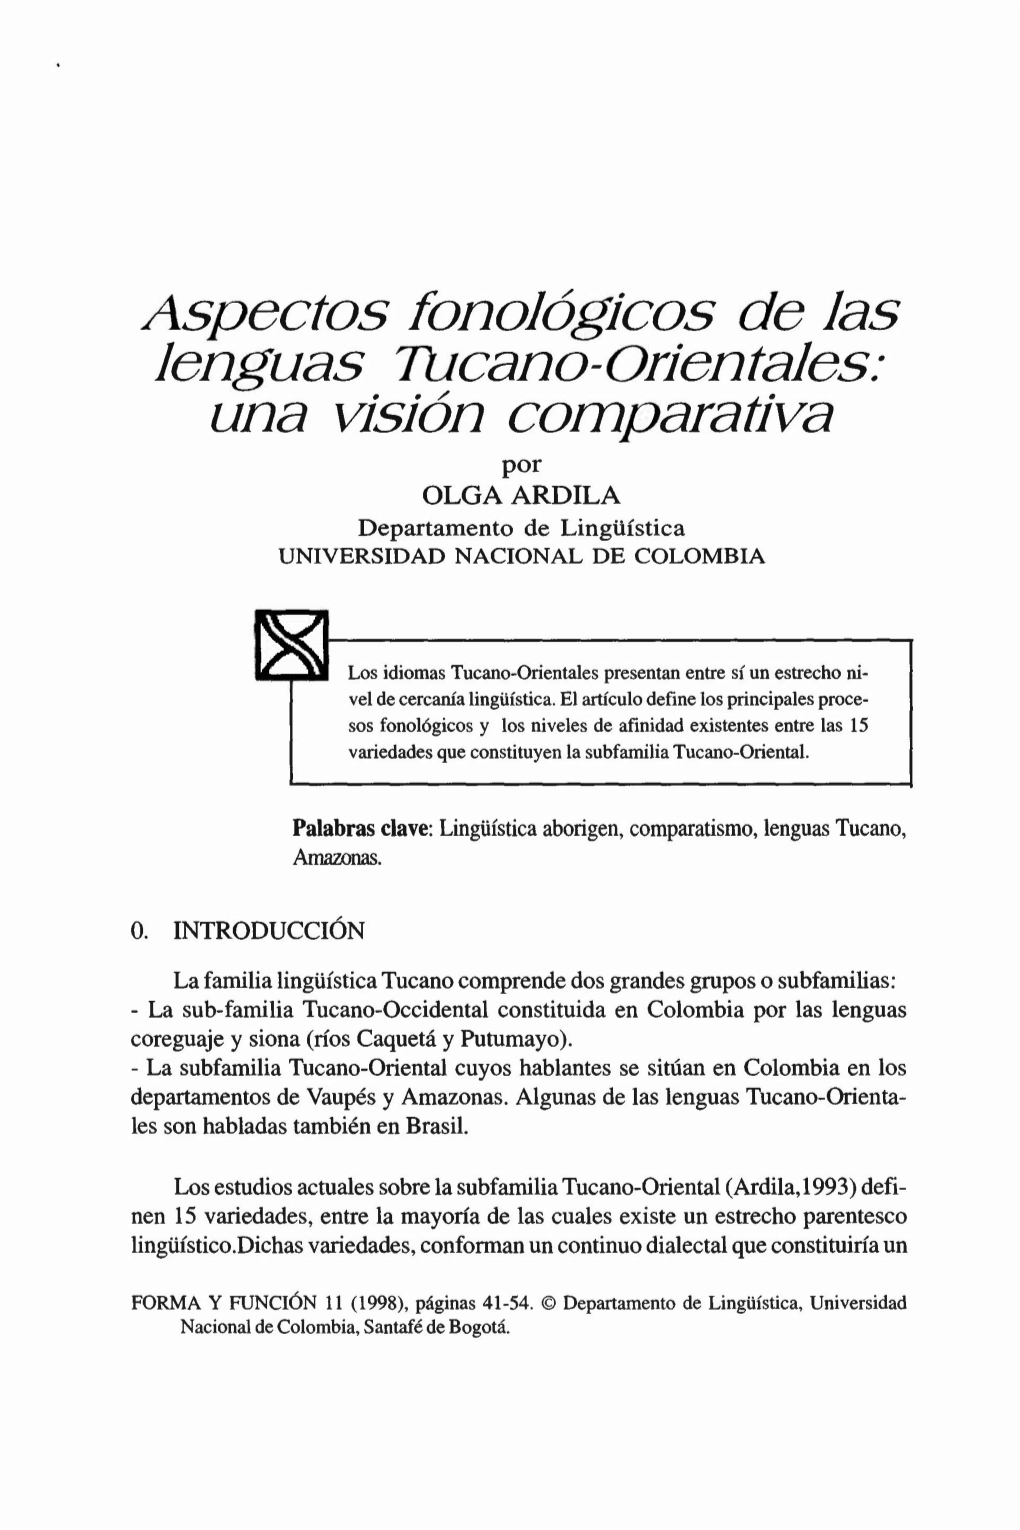 Aspectos Tonologtcos De Las Lenguas Tuceno-Oricntelcs: Una Vtsion Comporattvn Por OLGAARDILA Departamento De Lingüística UNIVERSIDAD NACIONAL DE COLOMBIA